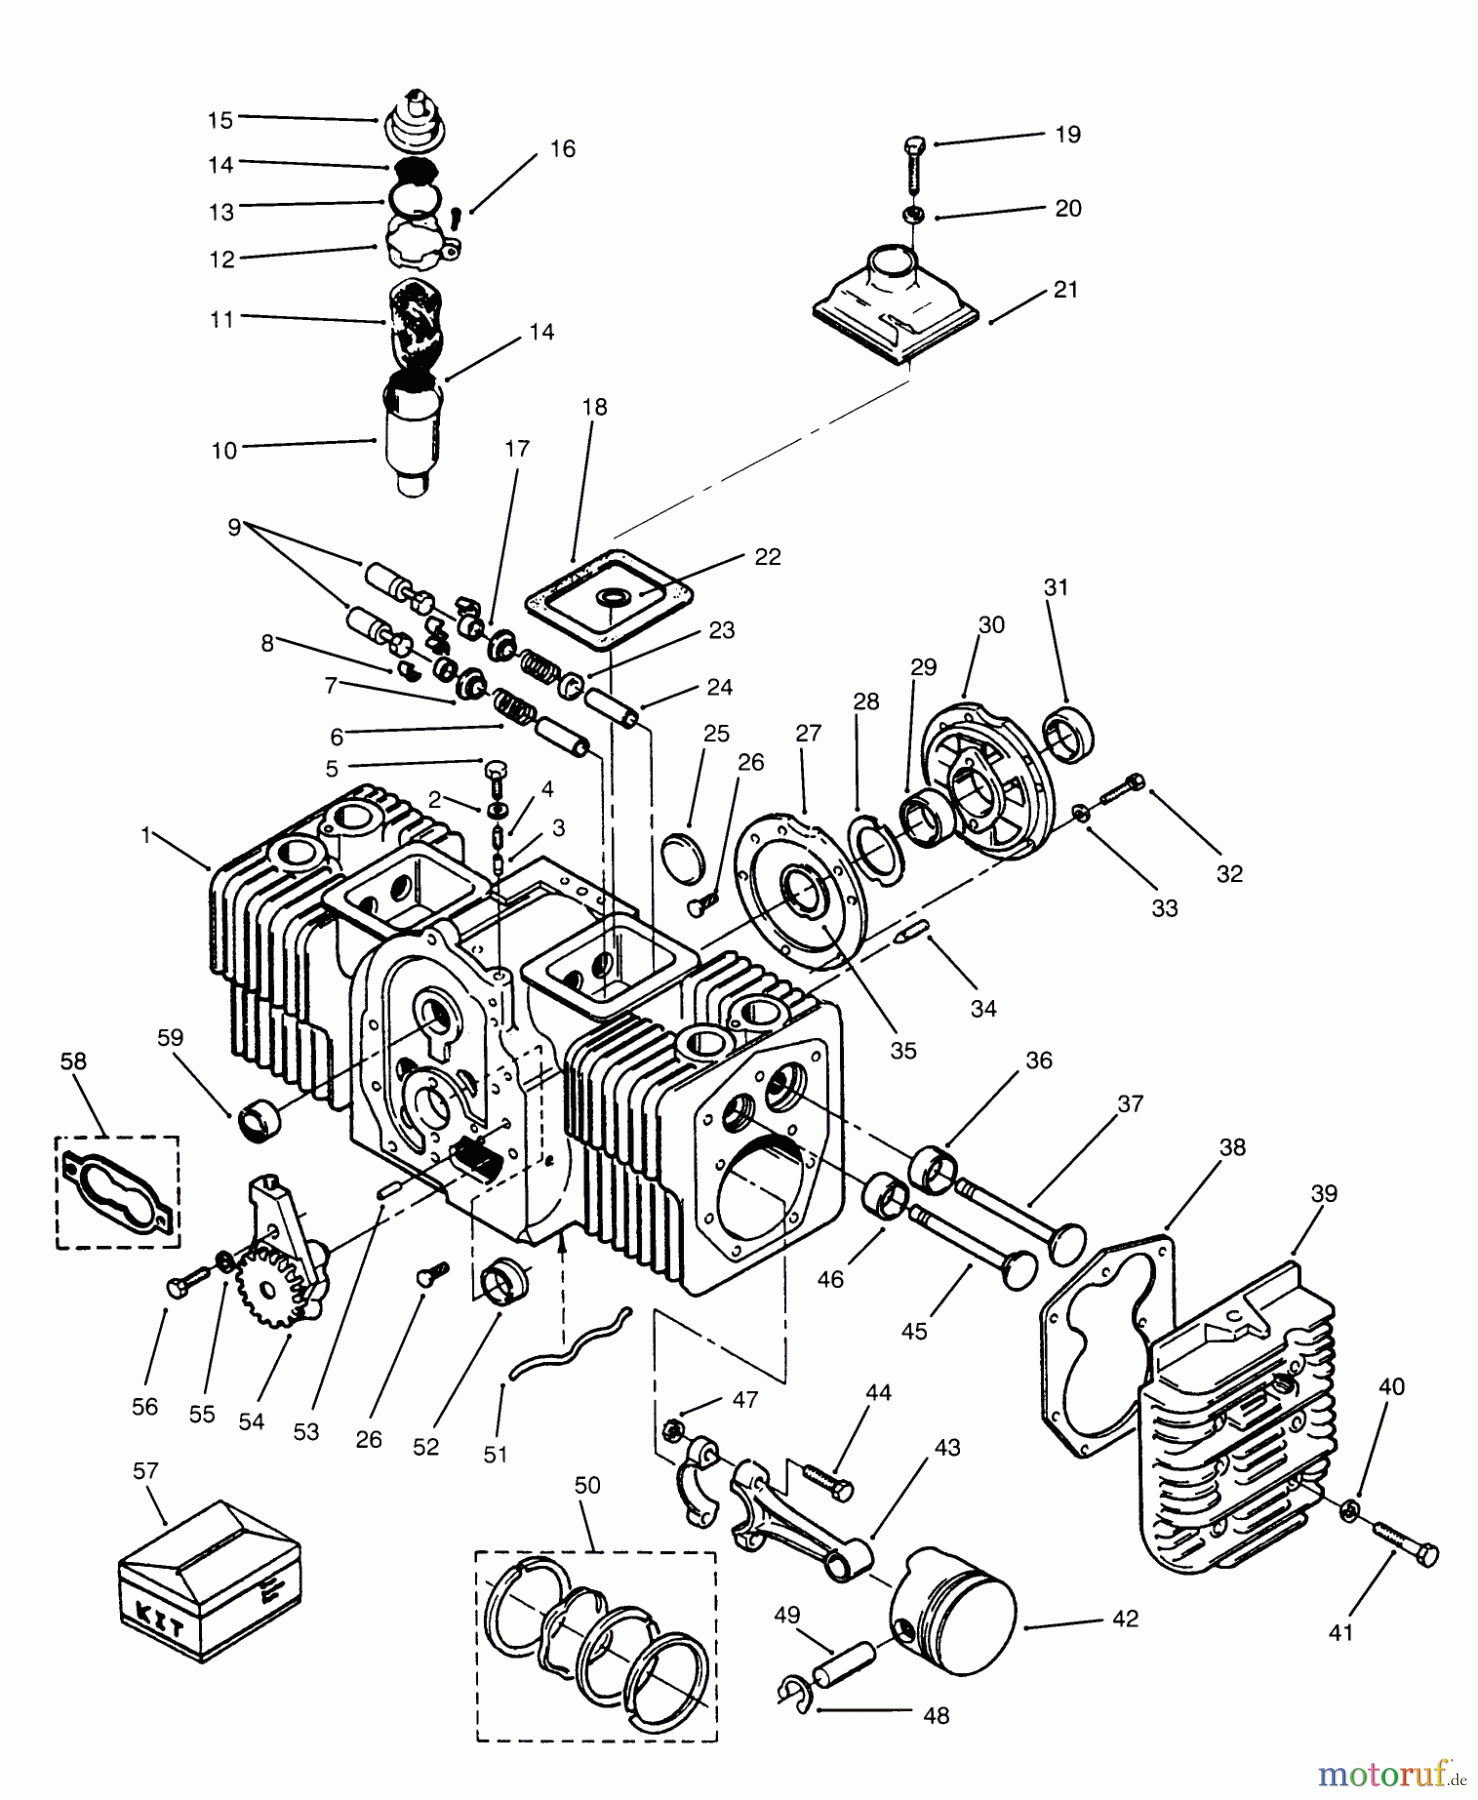  Toro Neu Mowers, Lawn & Garden Tractor Seite 1 73520 (520-H) - Toro 520-H Garden Tractor, 1995 (5900001-5900177) ENGINE CYLINDER BLOCK